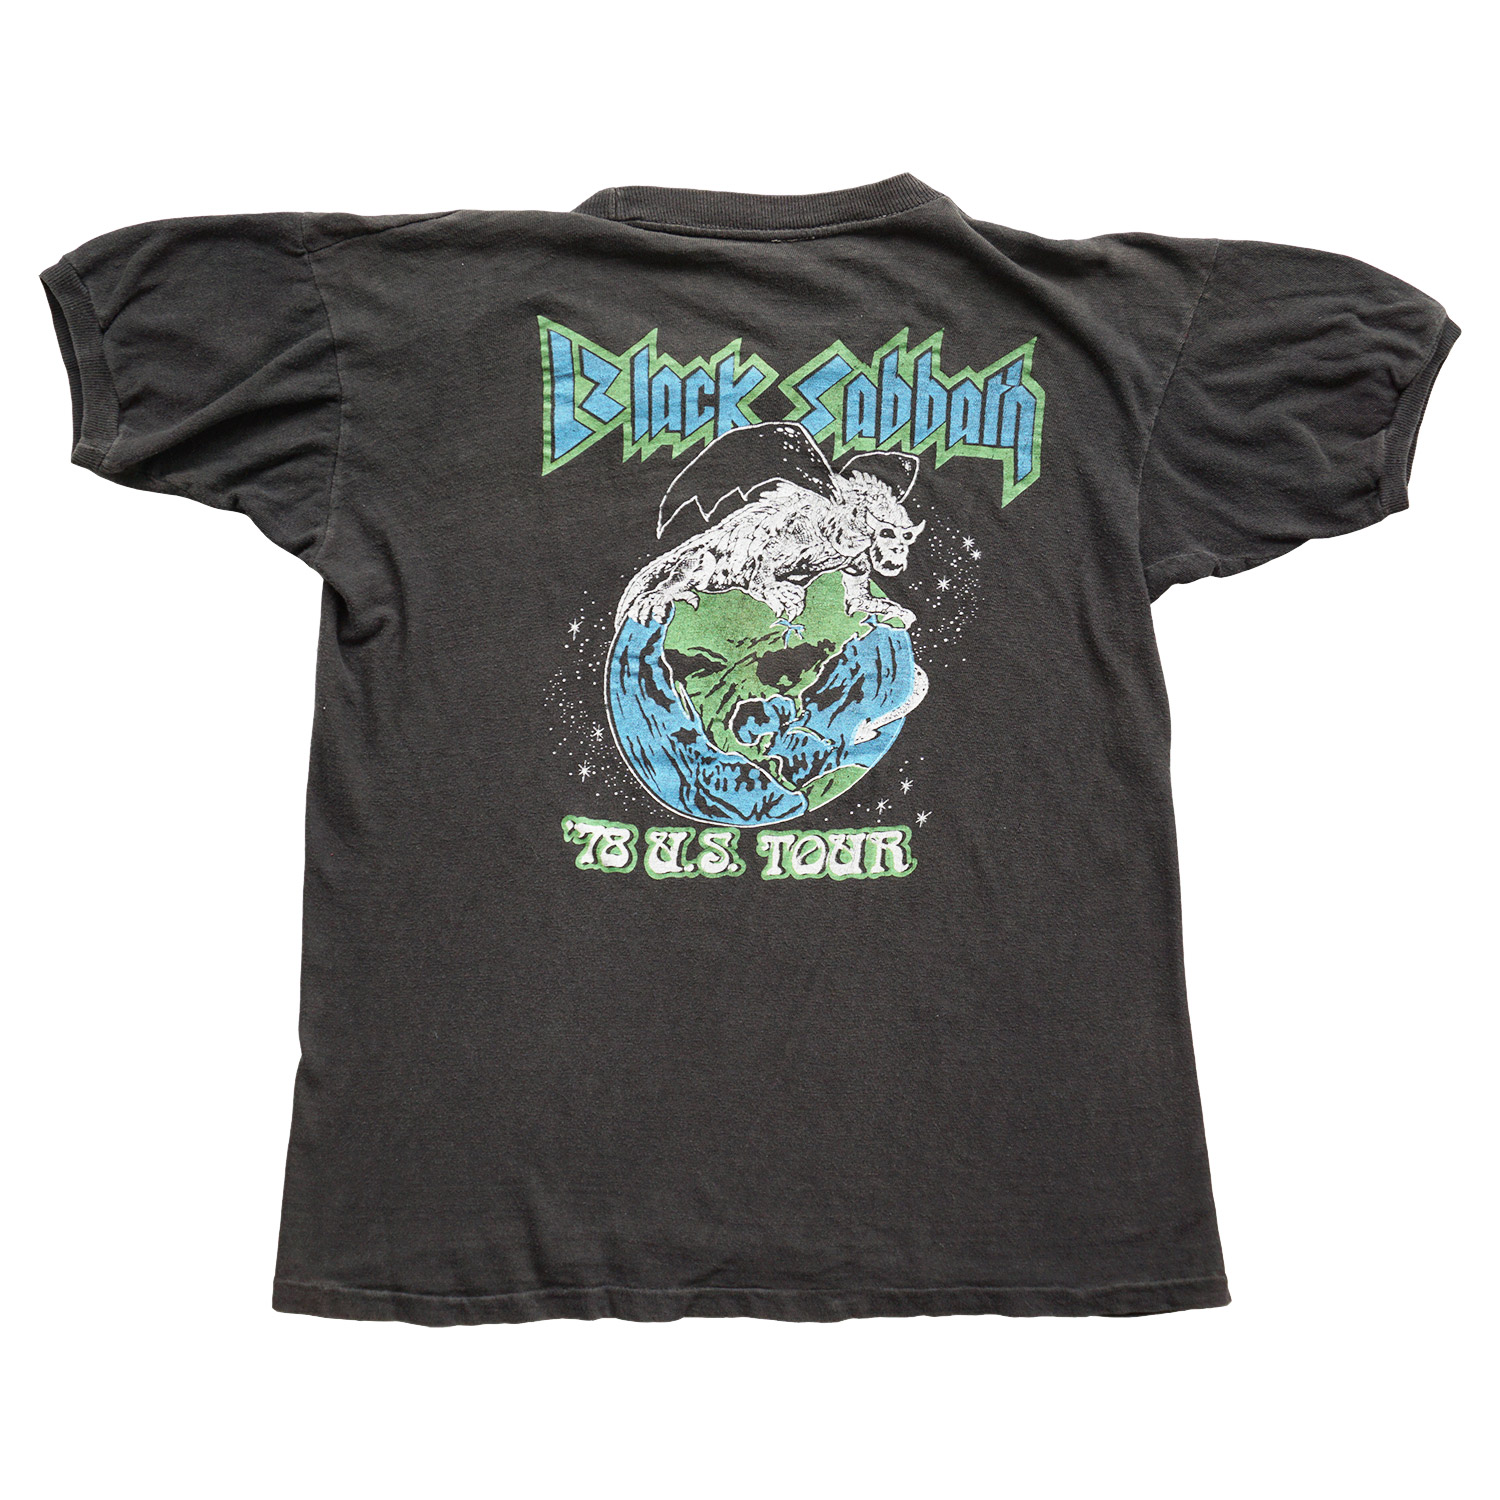 Vintage 1978 Black Sabbath US Tour T-shirt, Back